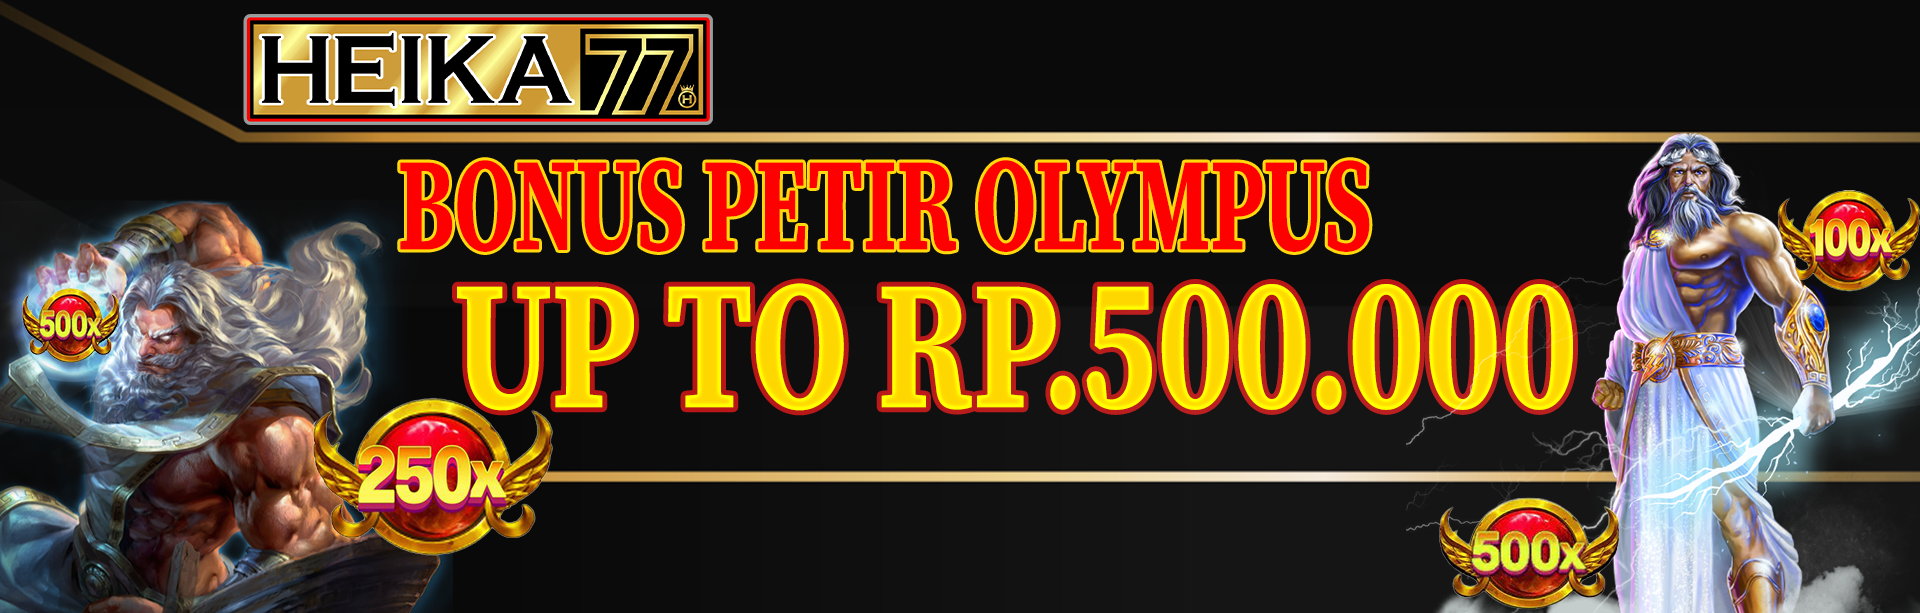 EVENT PETIR OLYMPUS